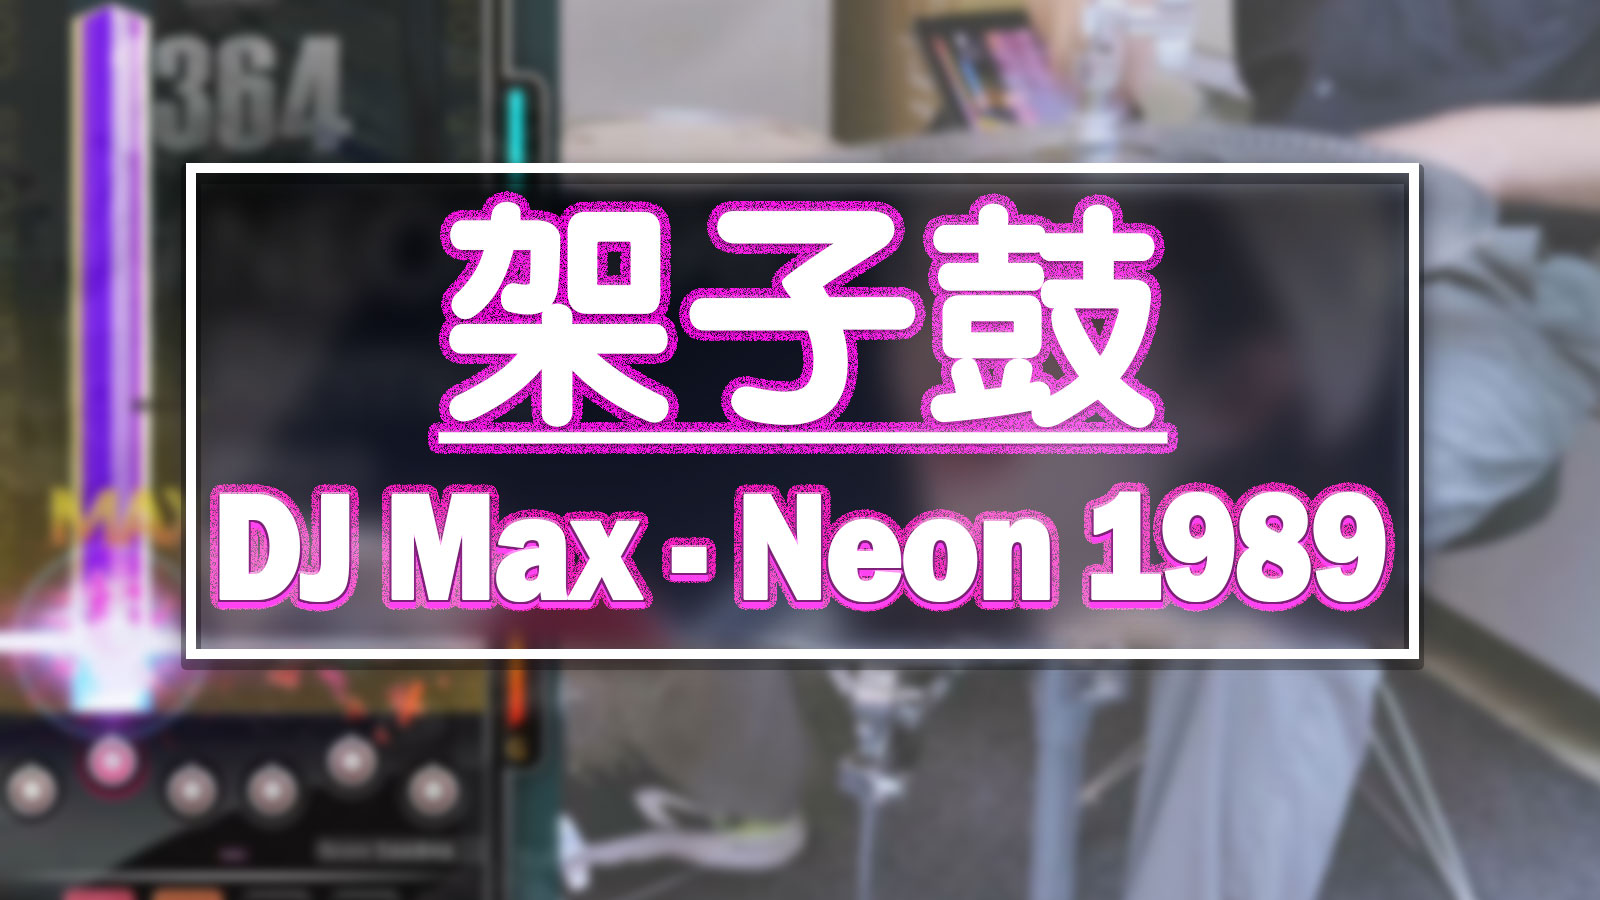 用架子鼓伴奏一曲 DJMAX 《Neon 1989》